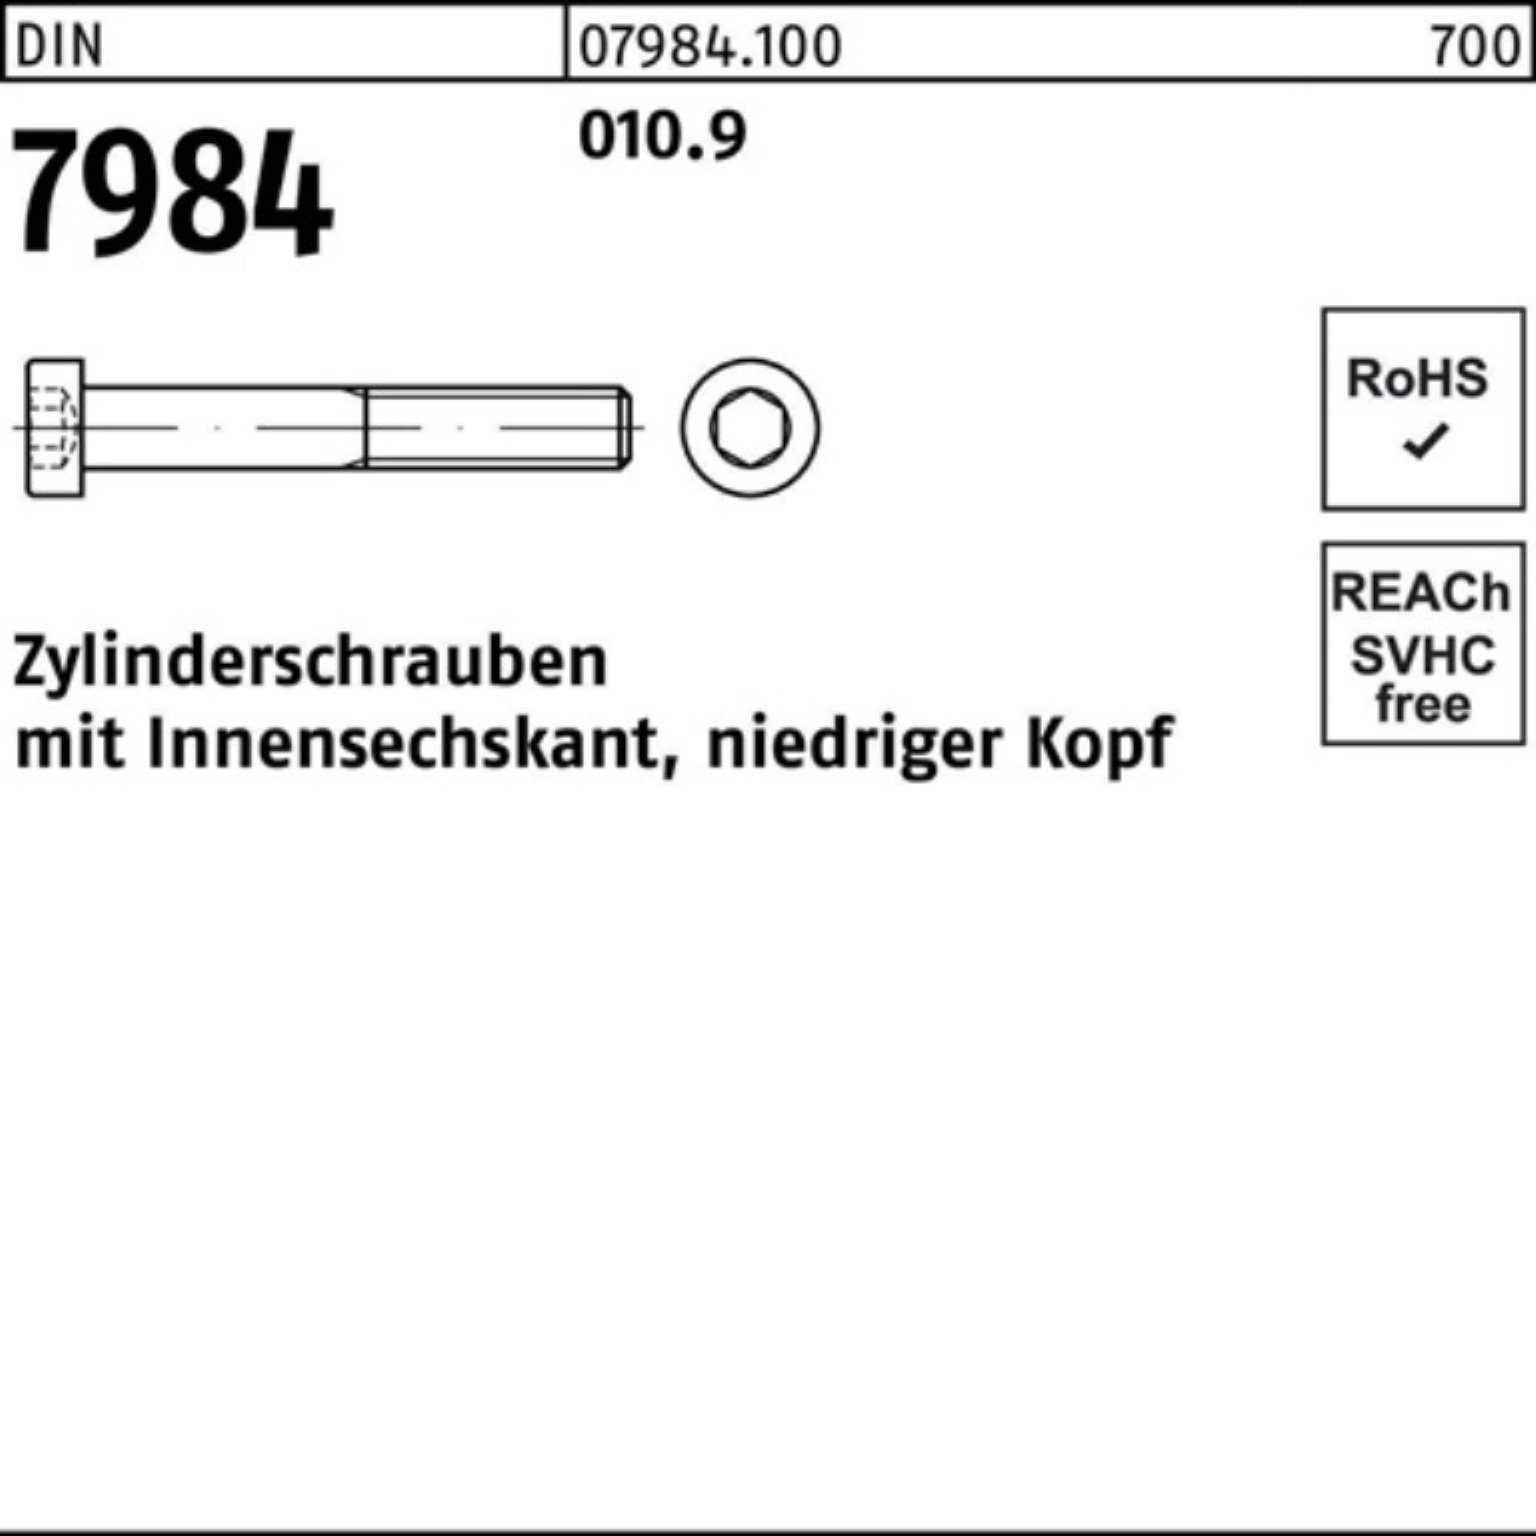 Innen-6kt Zylinderschraube 7984 M8x Reyher 010.9 Zylinderschraube 12 DIN Stück 200 200er Pack